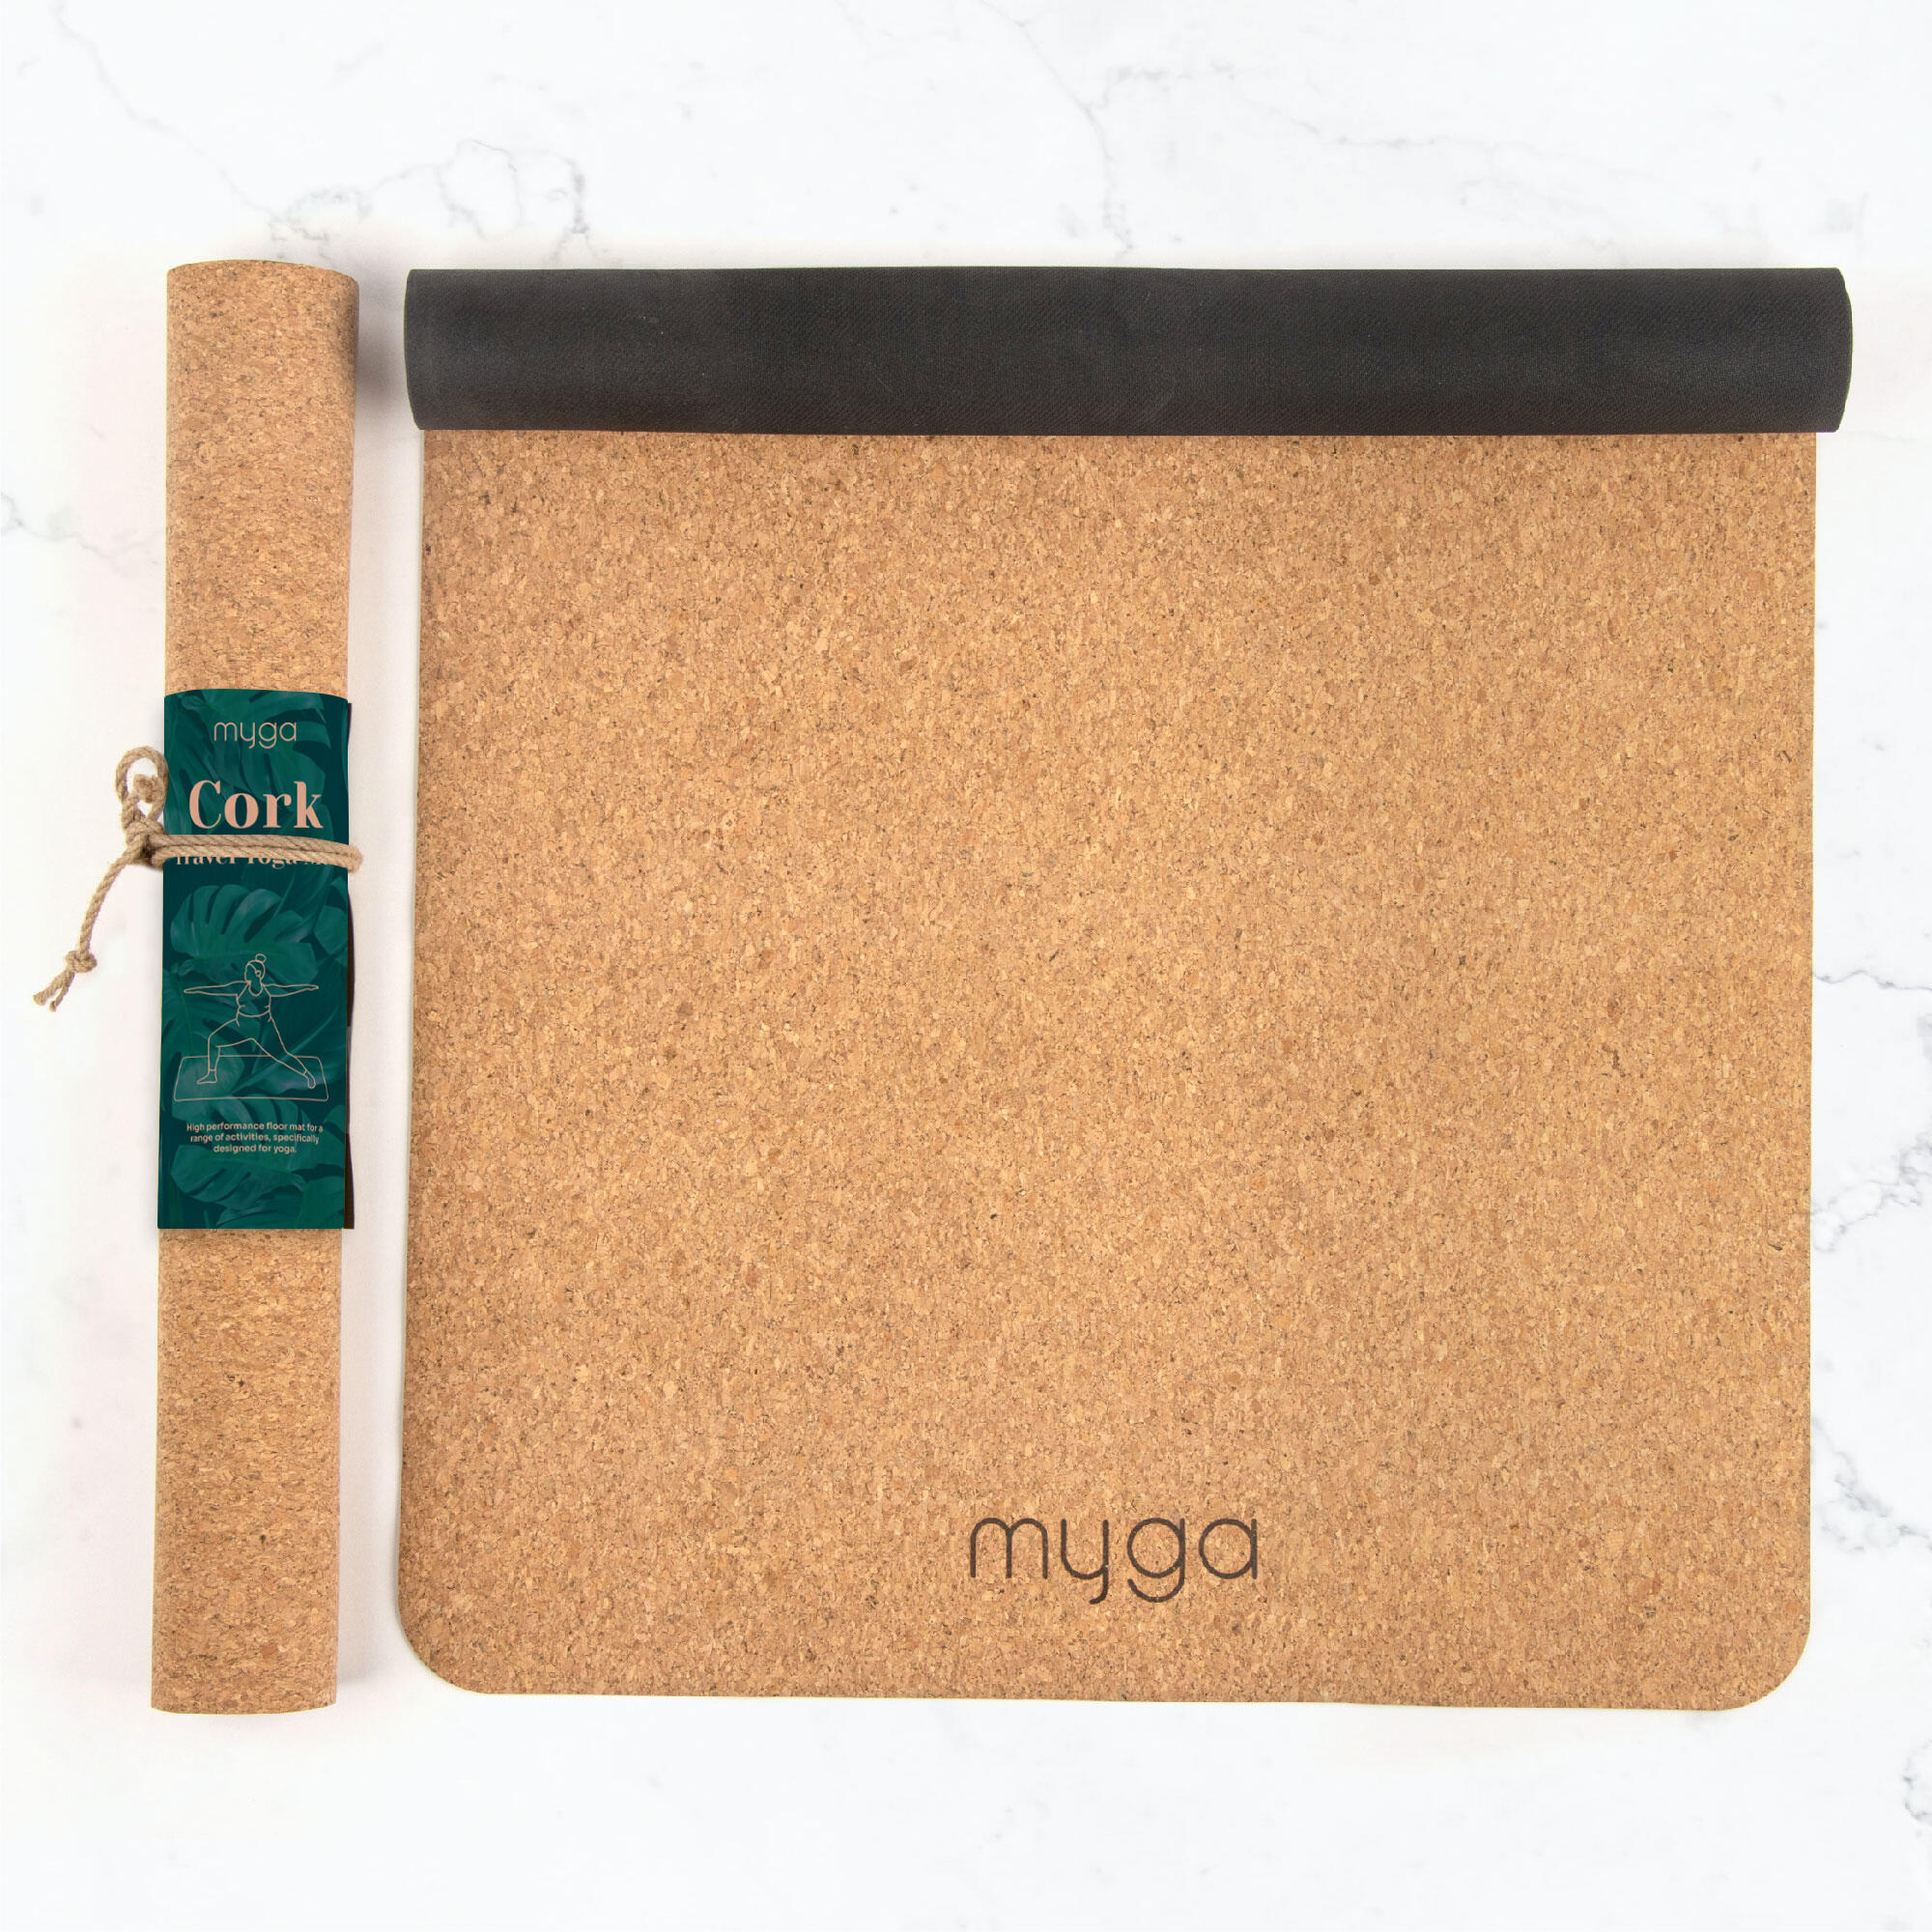 Myga Cork/Rubber Yoga Mat 1/8